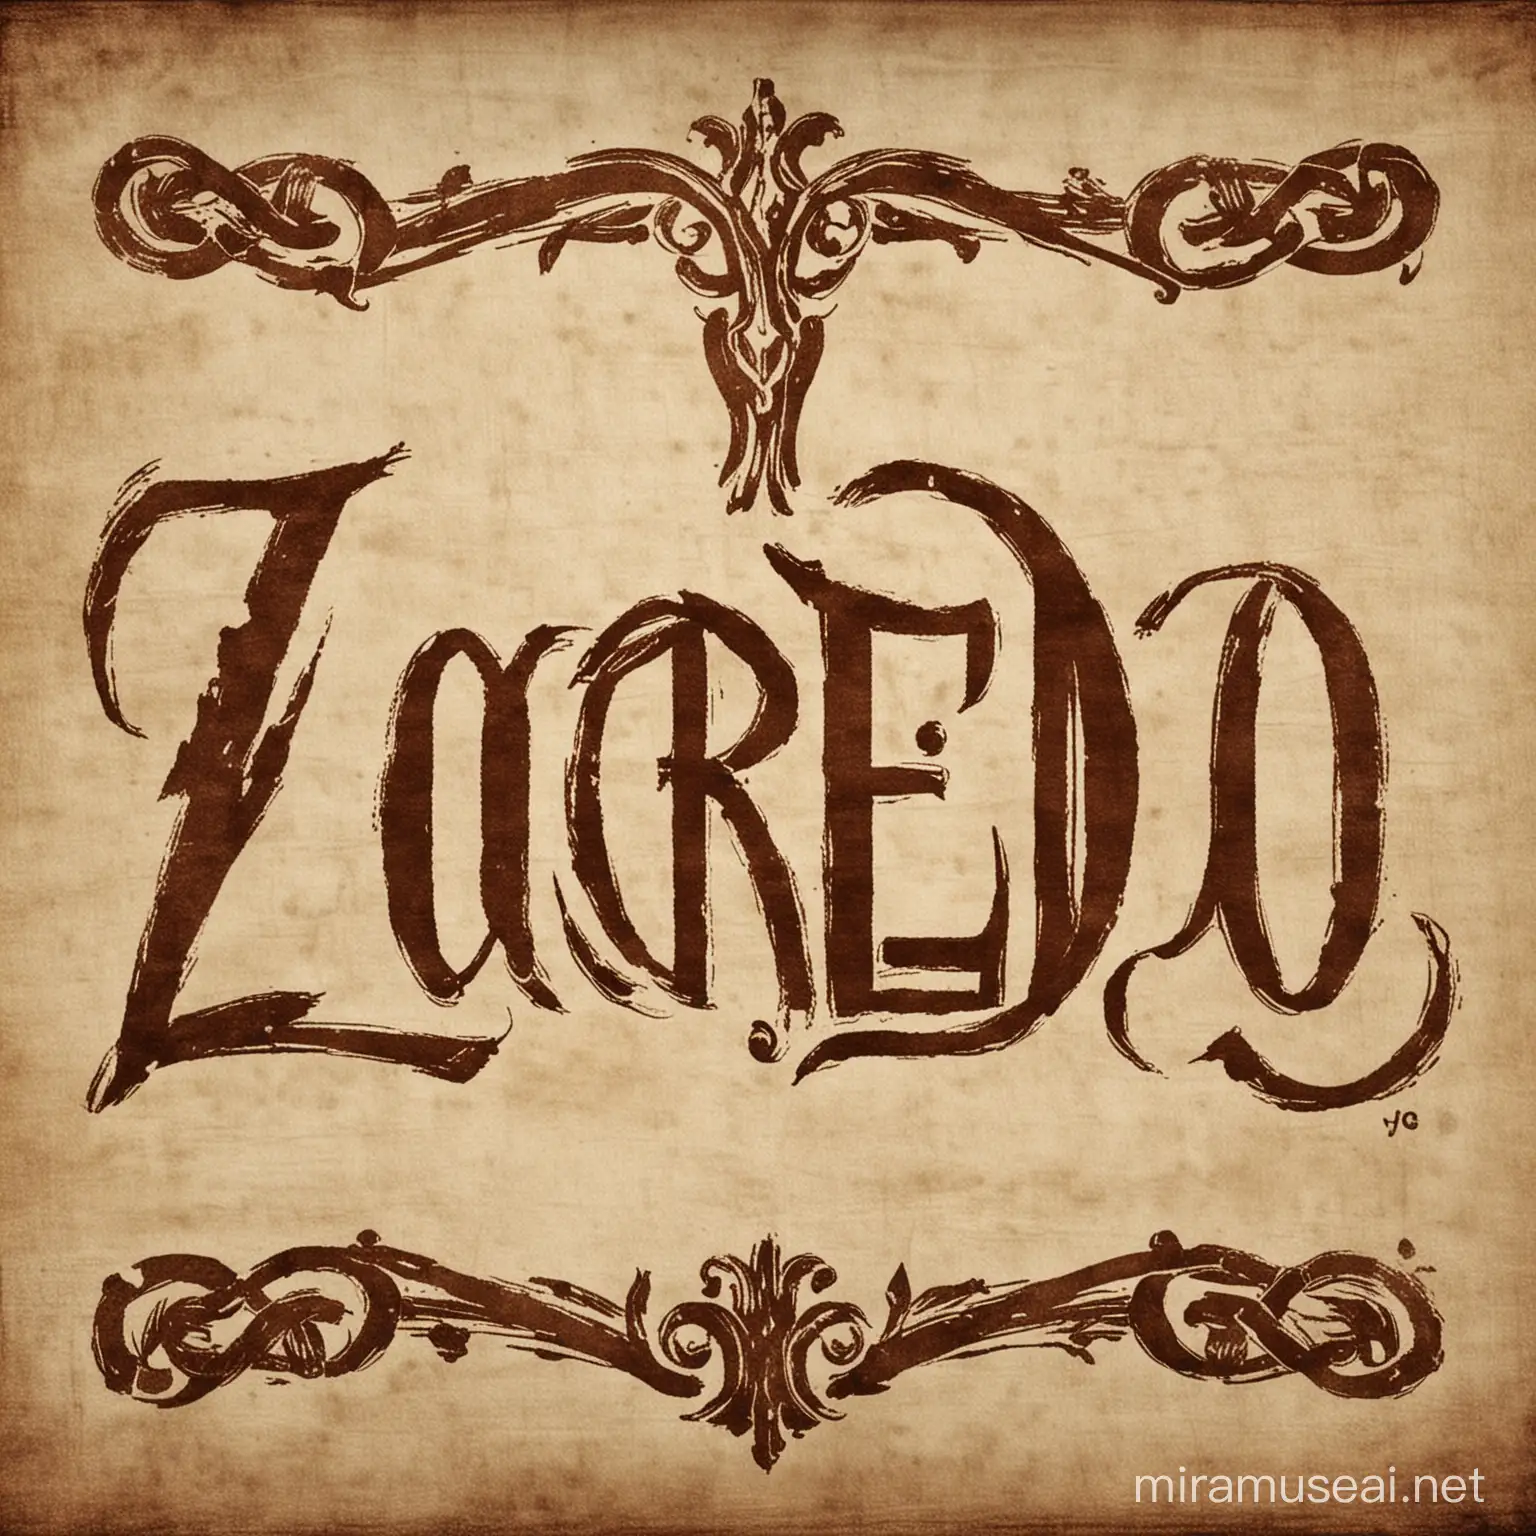 Ancient Zocredo Inscription